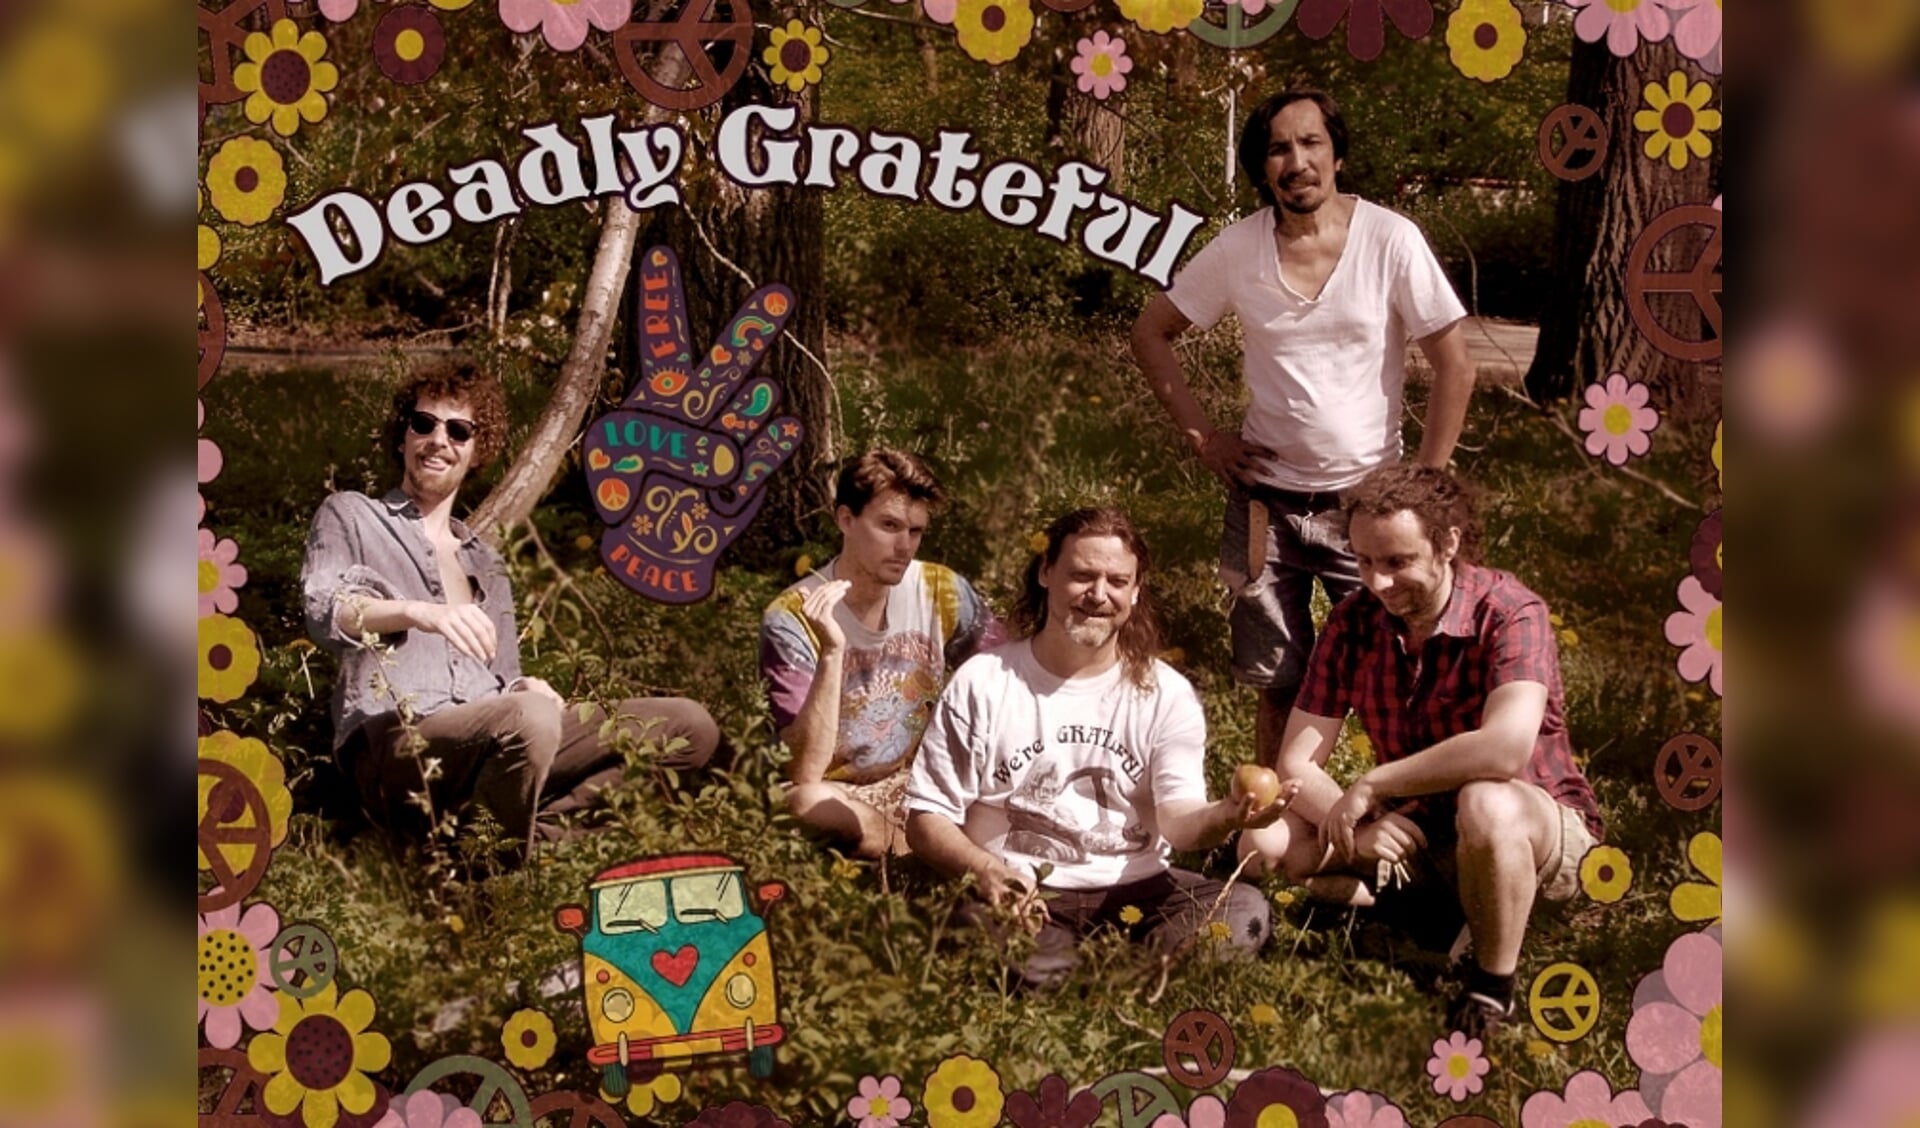 Deadly Grateful speelt nummers van de band Grateful Dead